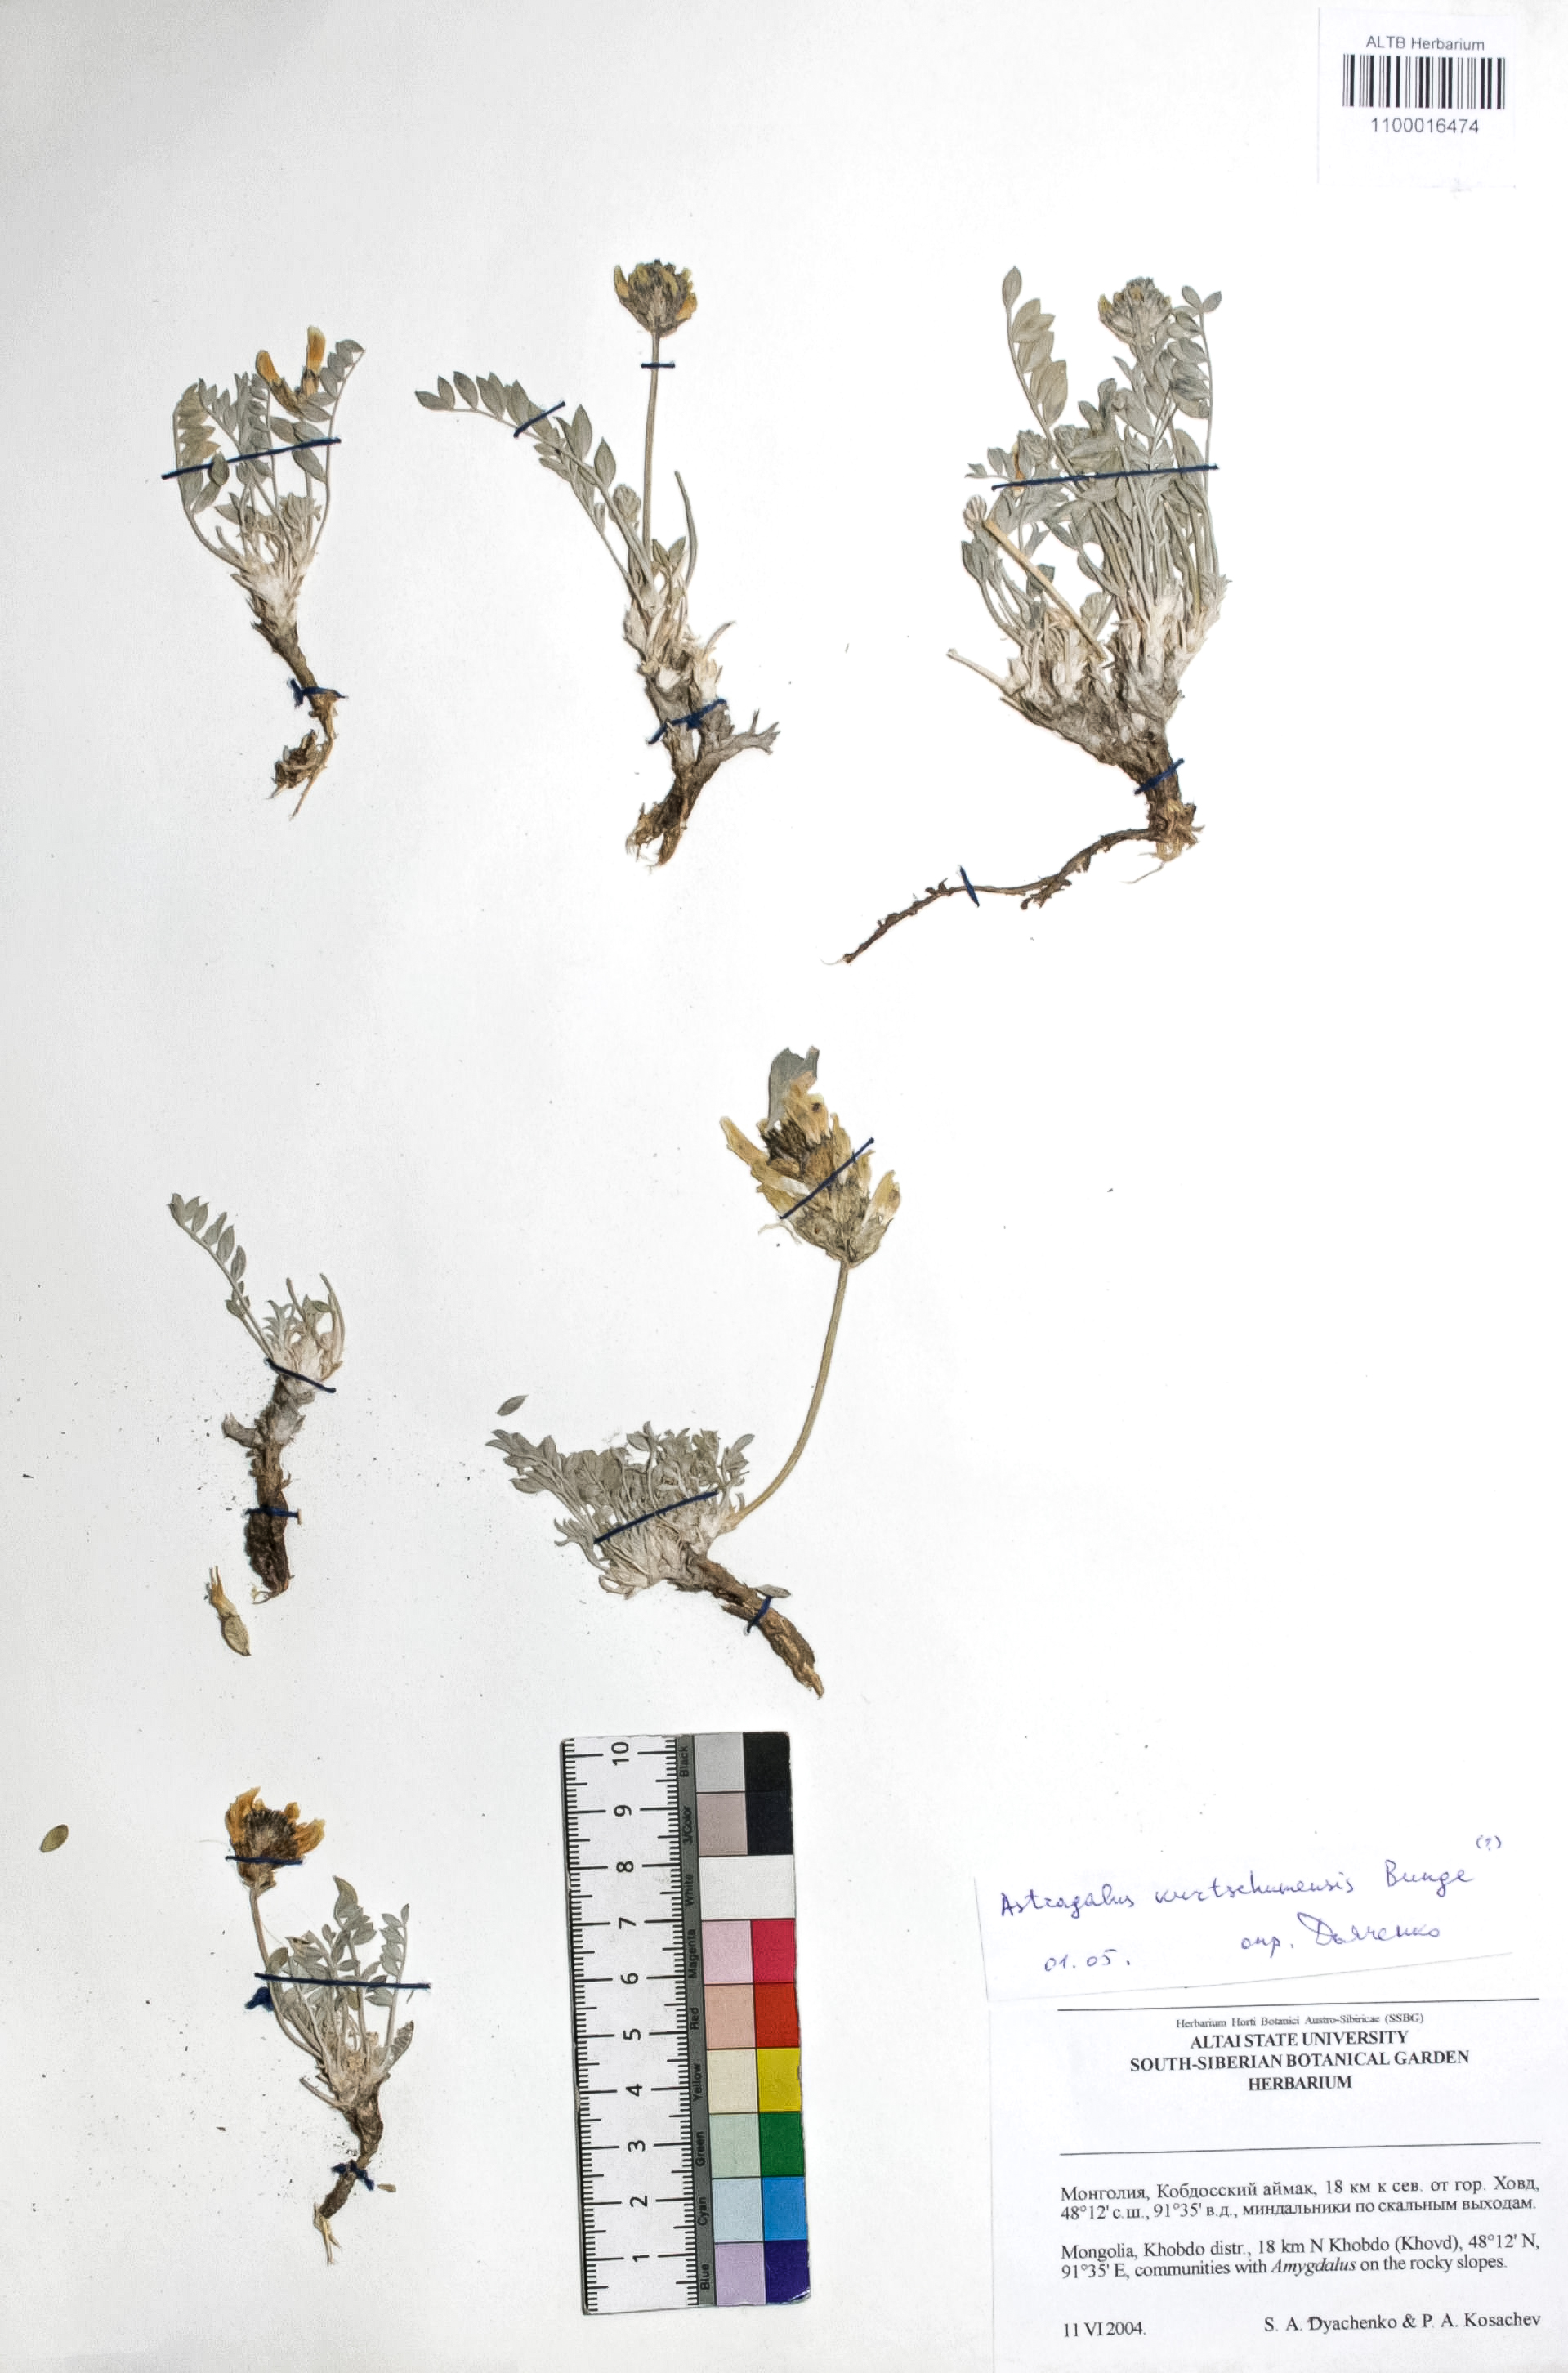 Astragalus kurtschumensis Bunge